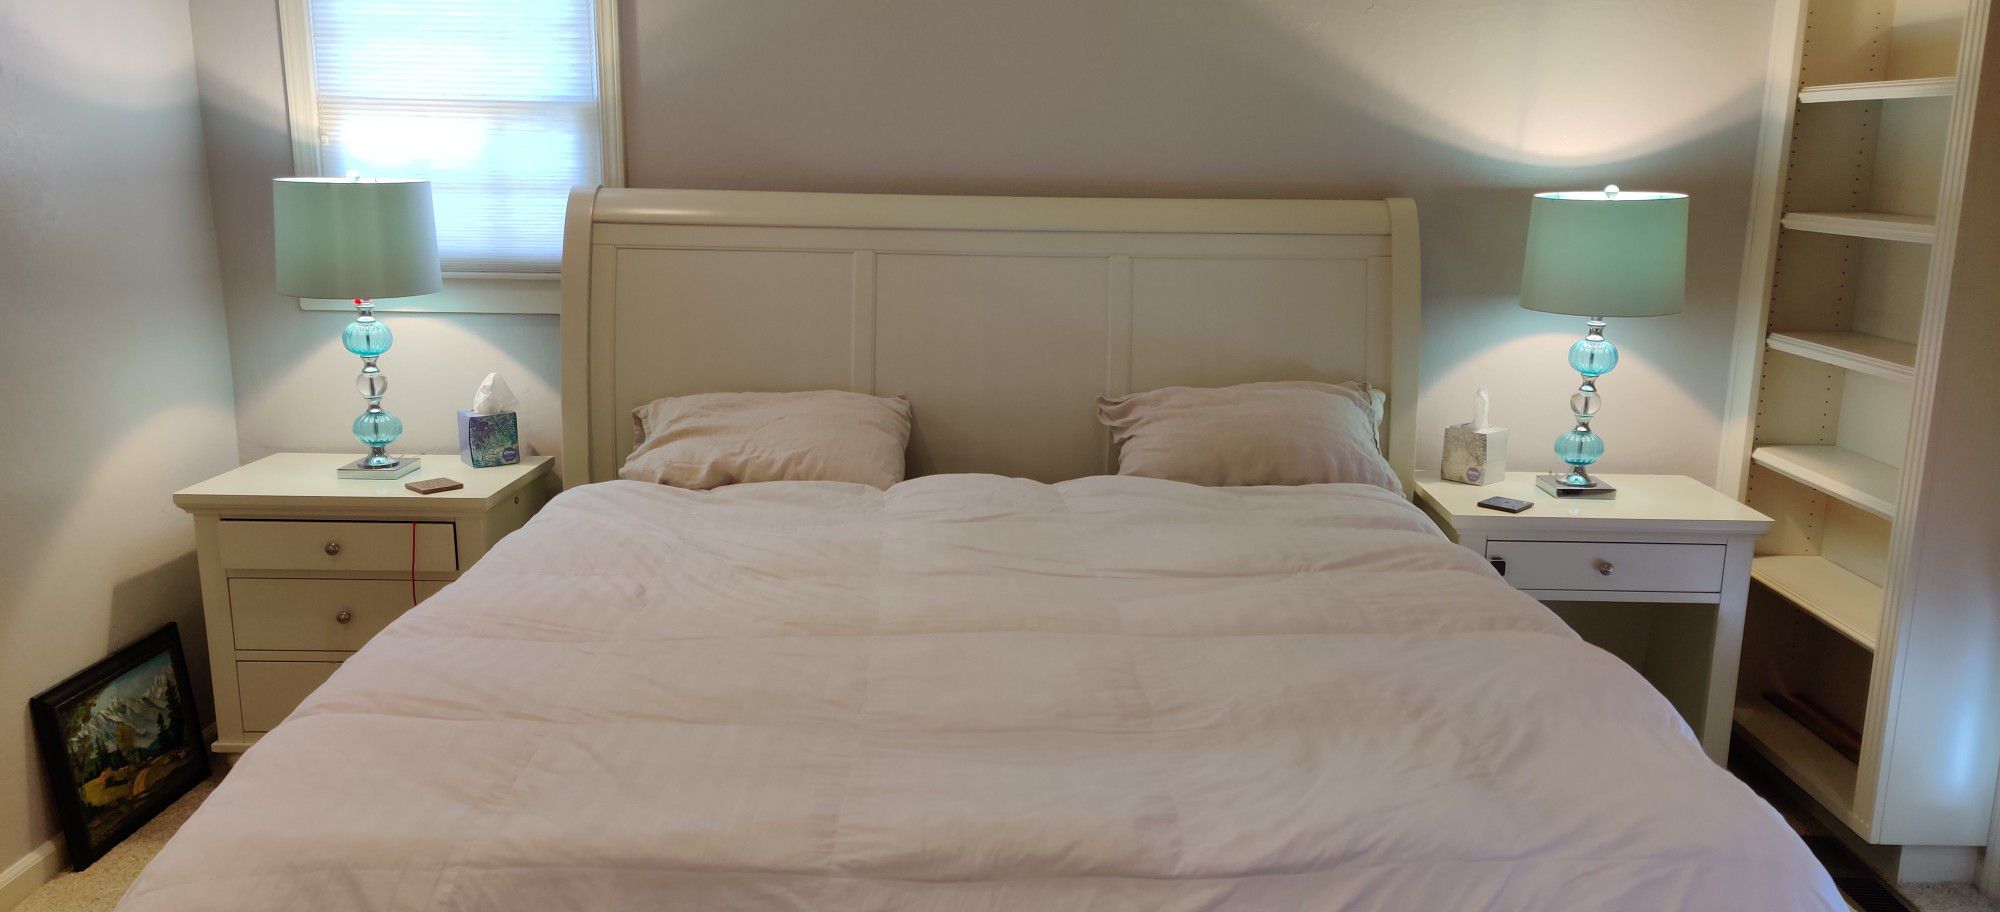 Aspenhome Bedroom Set, mattress, and Pier1 Aqua Lamps